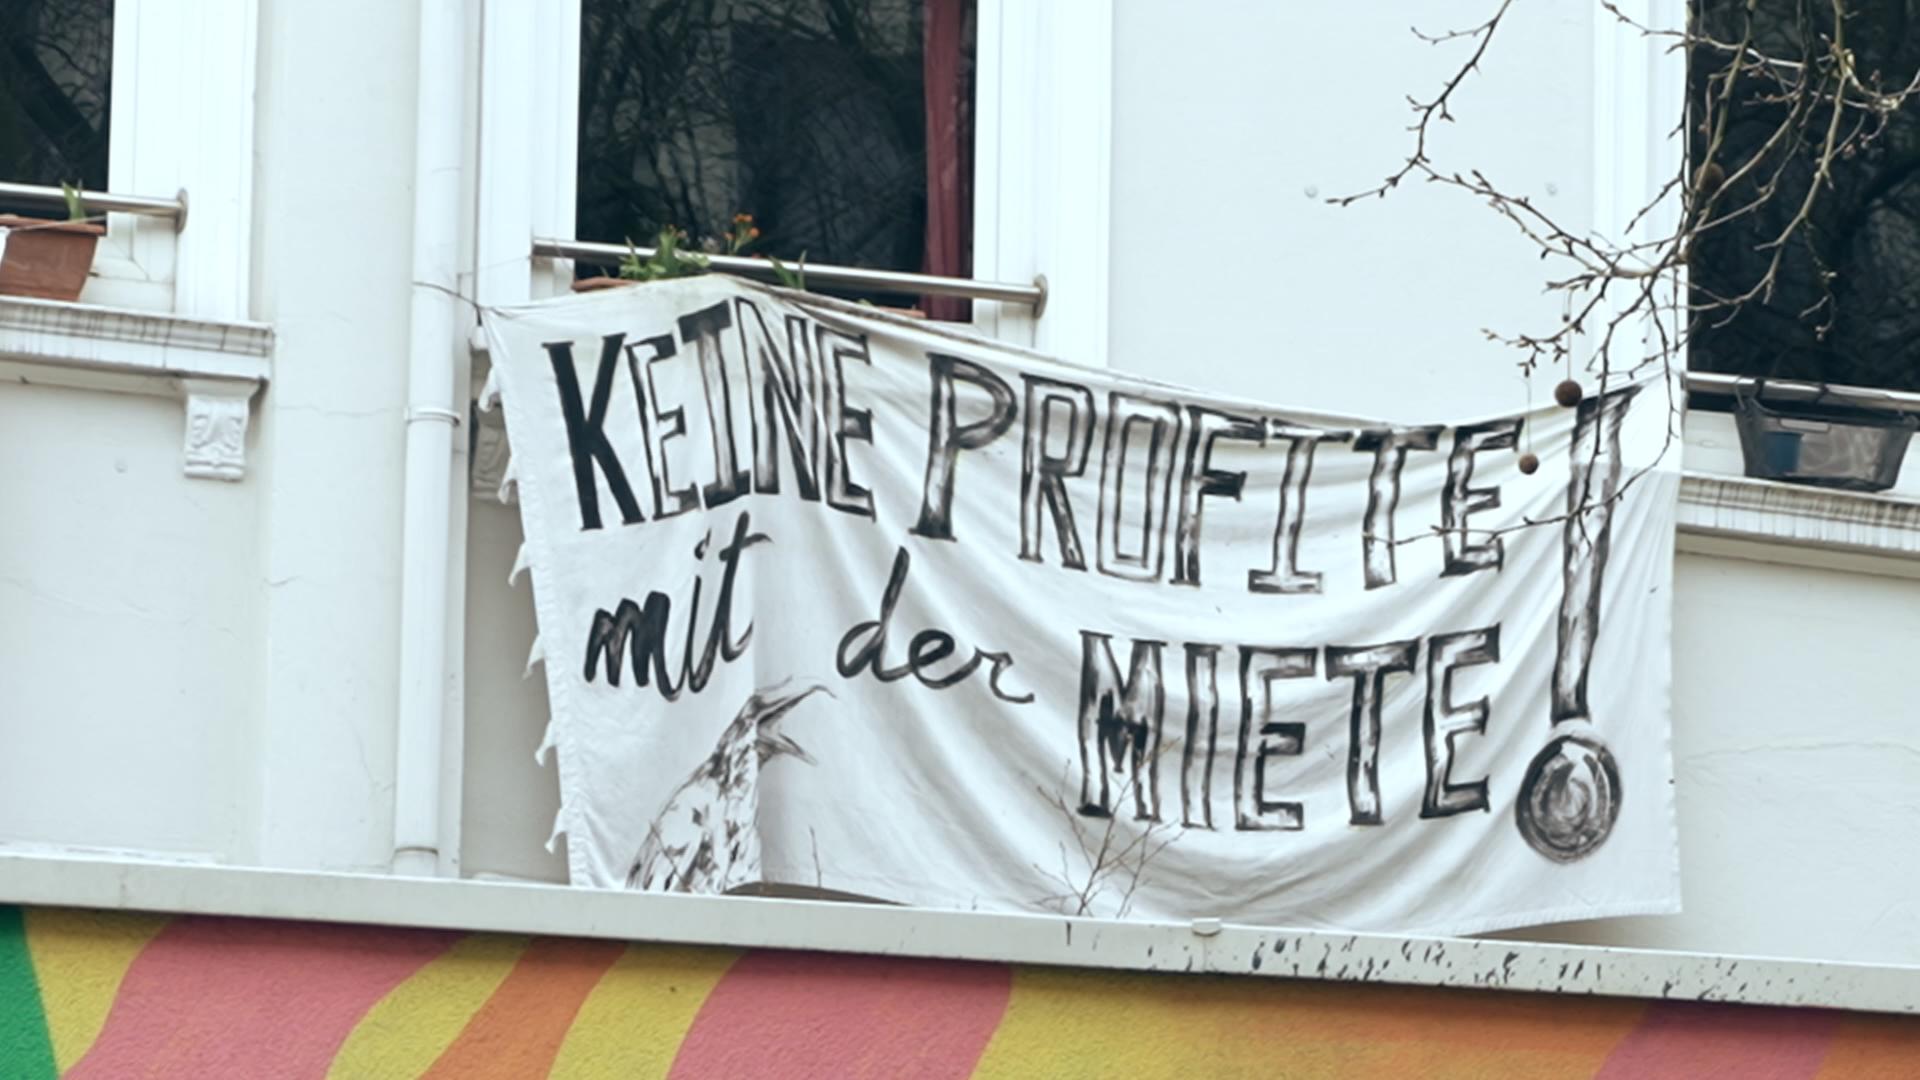 Transparent an einem Mietshaus: "Keine Profite mit der Miete!"